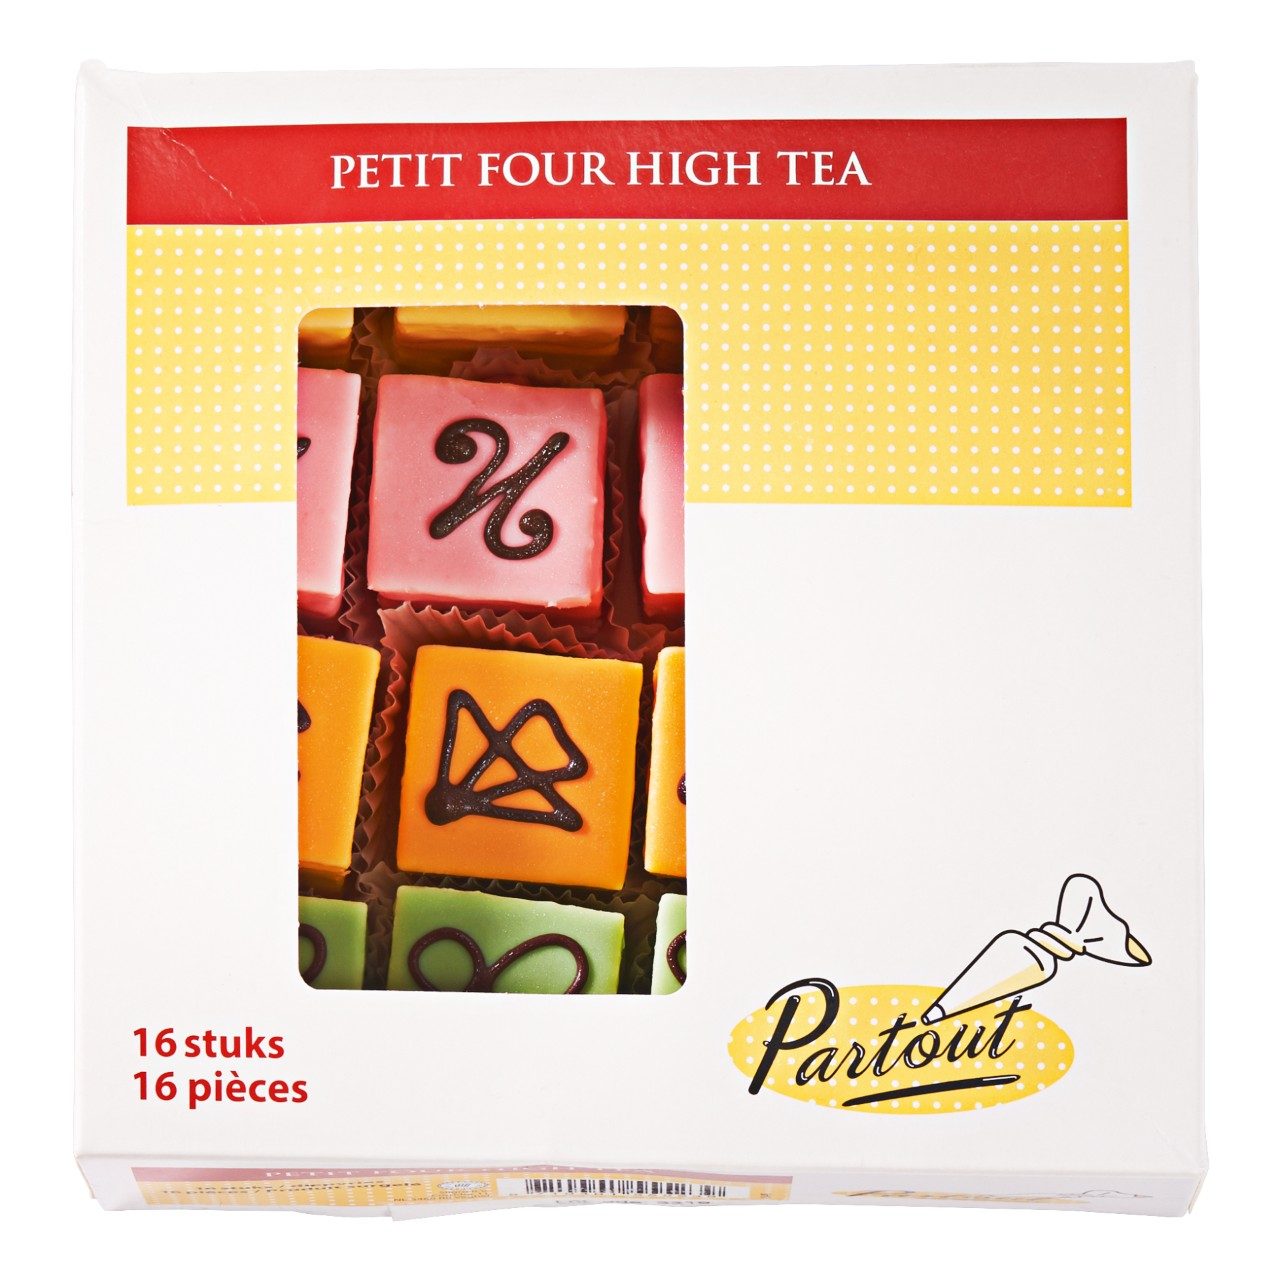 Petit four high tea